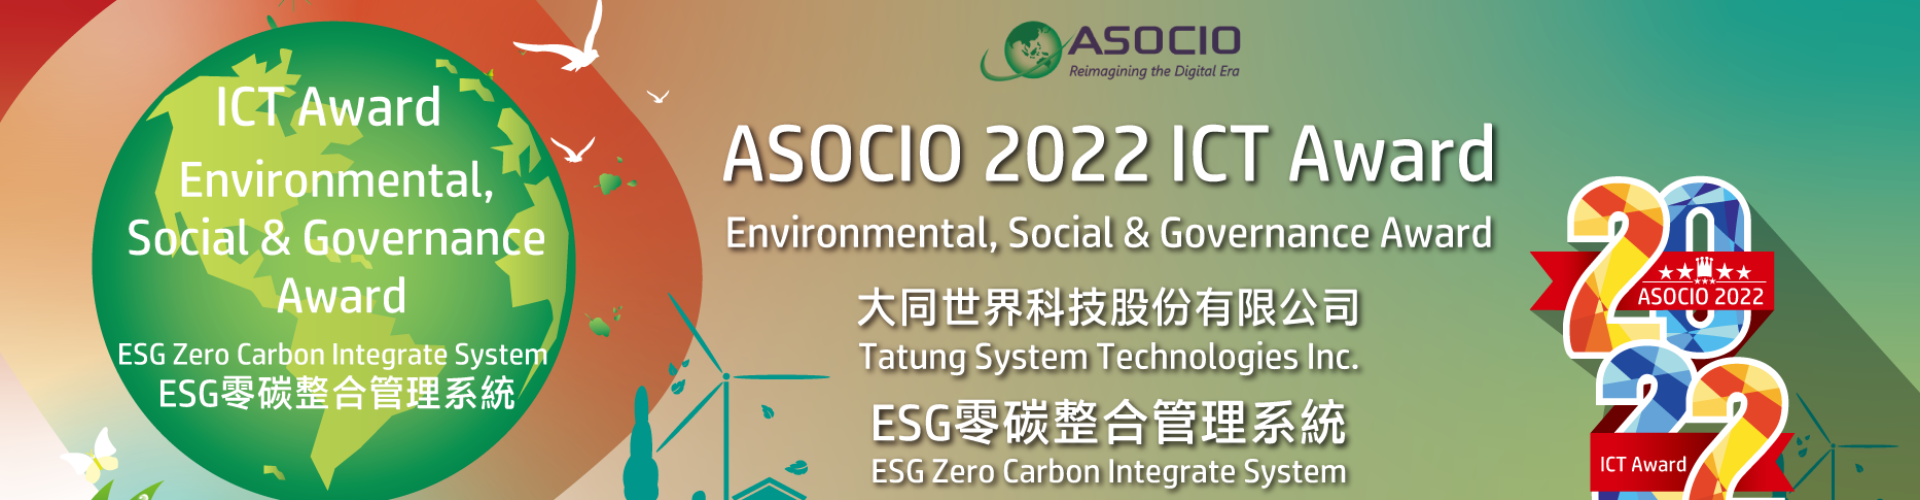 大世科-TSTI ESG Zero Carbon - ASOCIO 2022 ICT Award ESG Award winning proposal